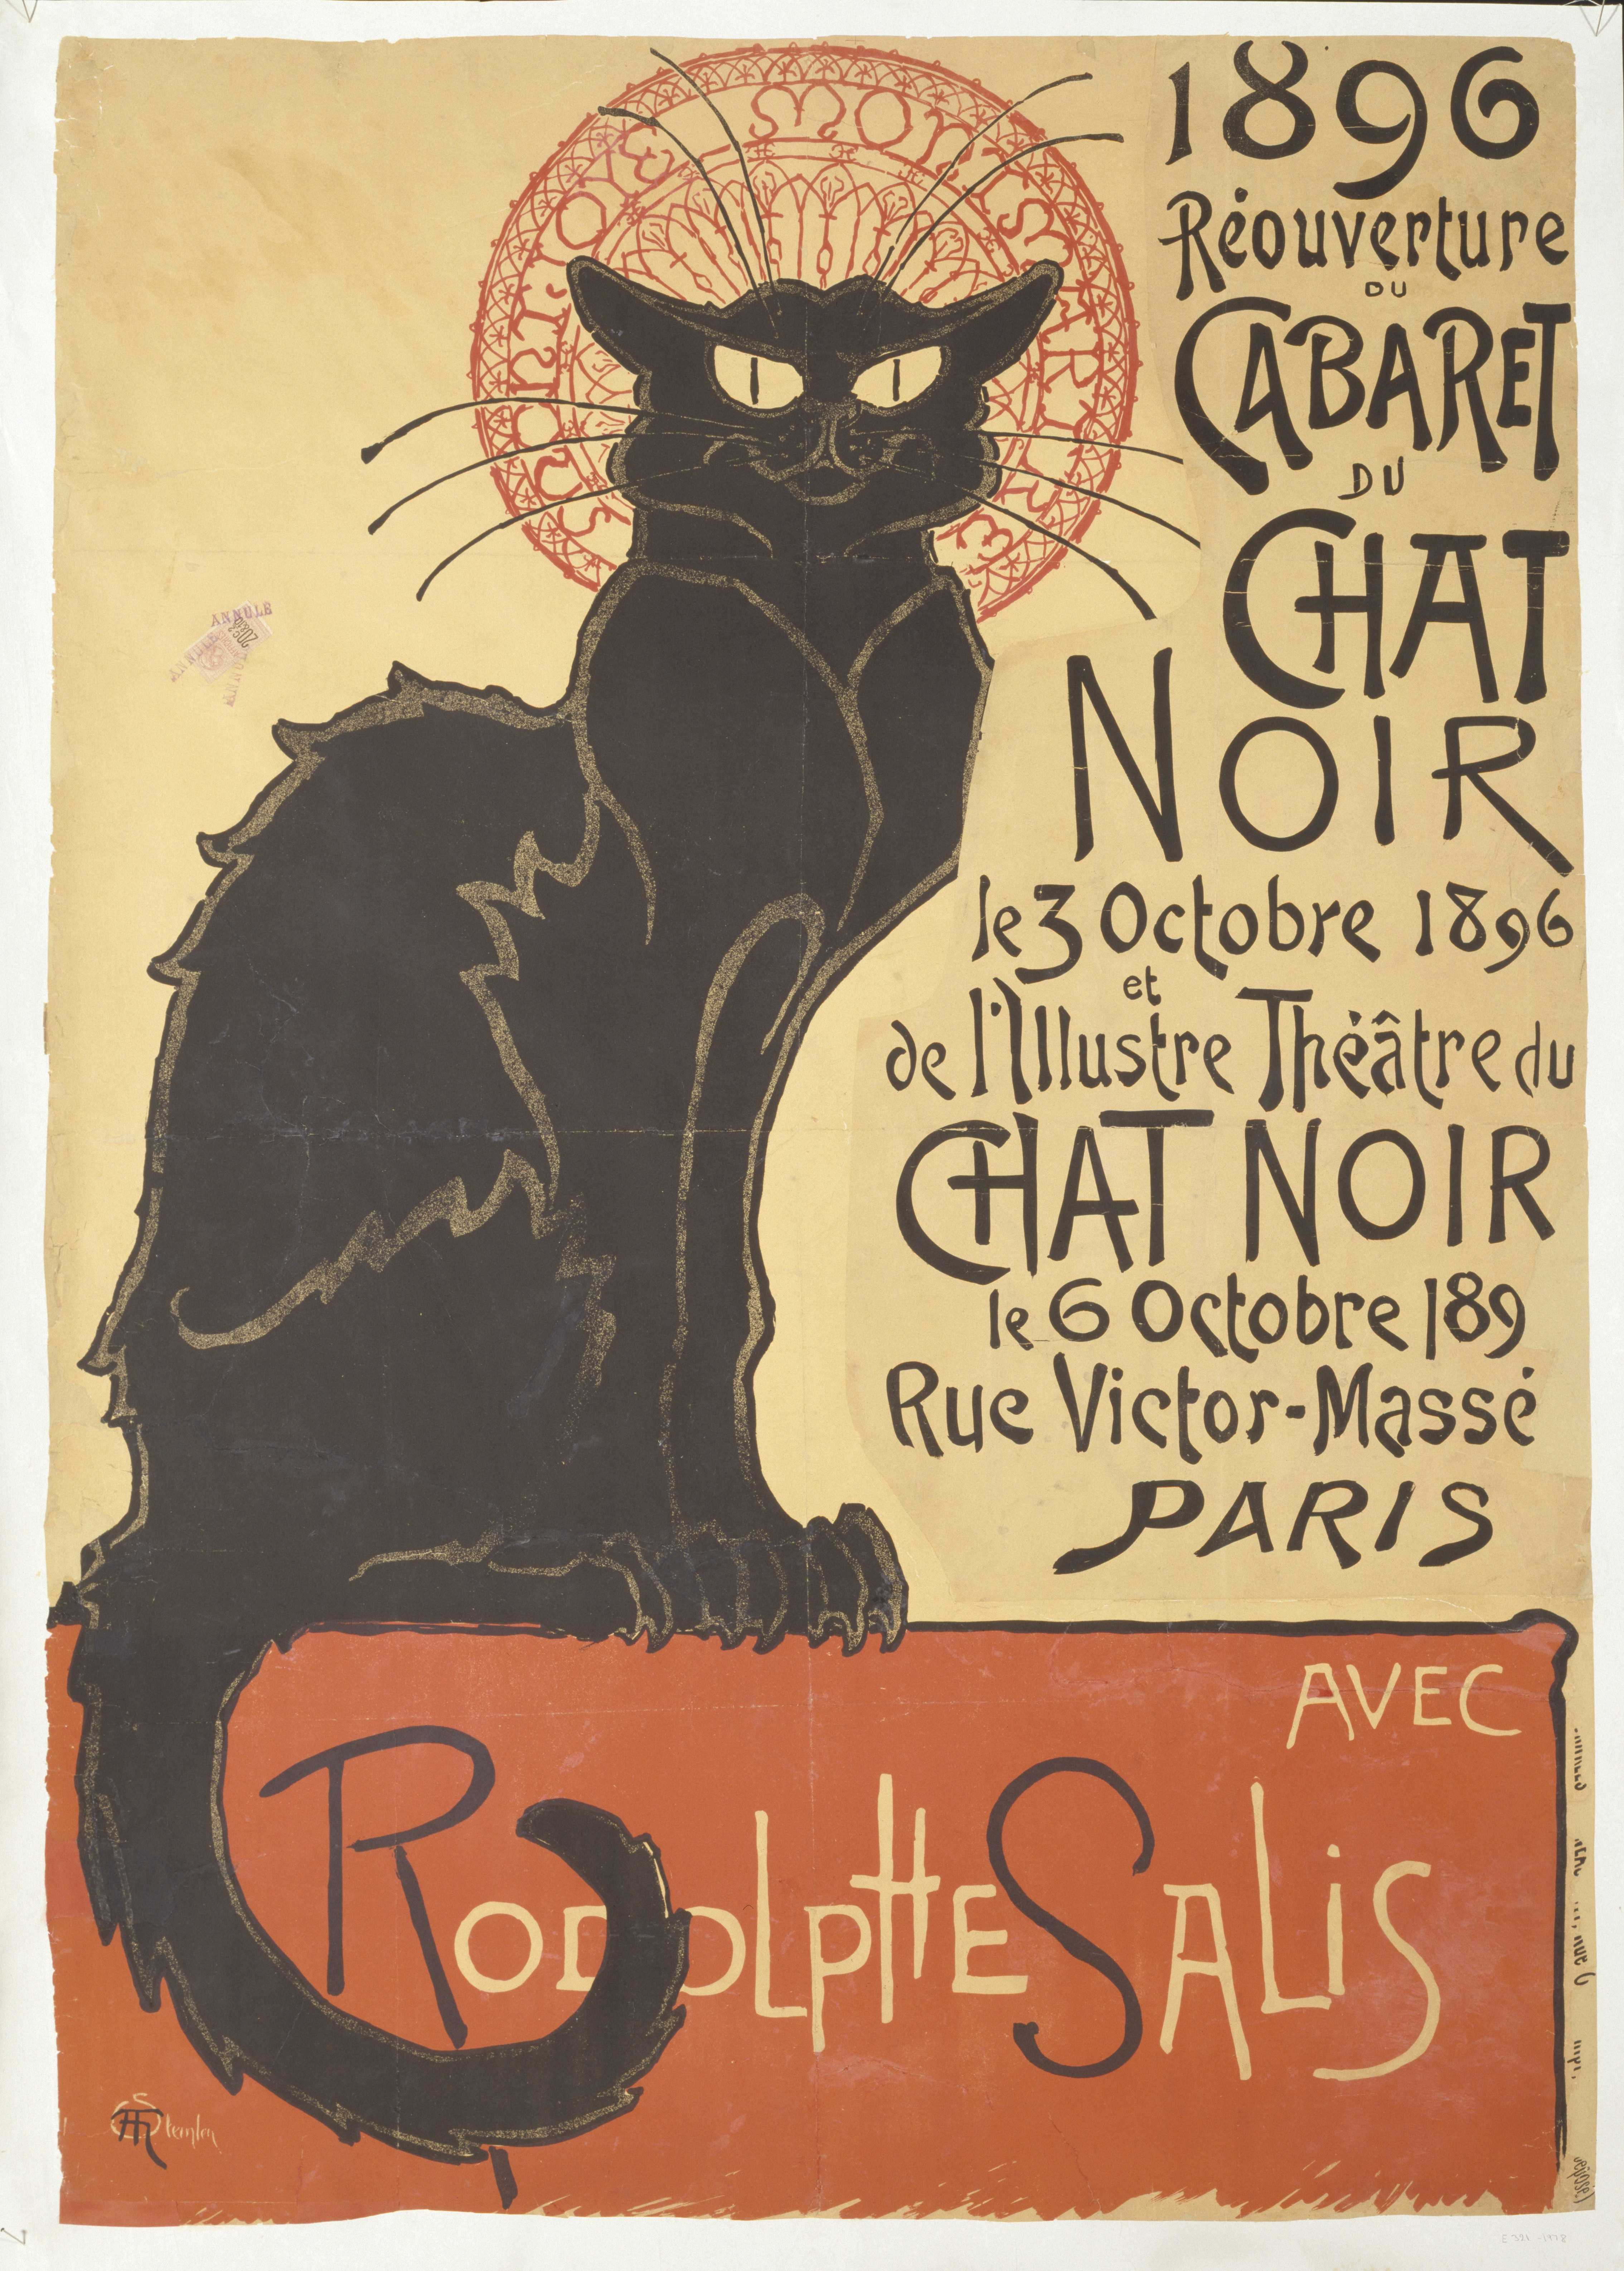 Théophile-Alexandre Steinlen, Réouverture du Cabaret du Chat Noir, 1896 © Victoria and Albert Museum, London